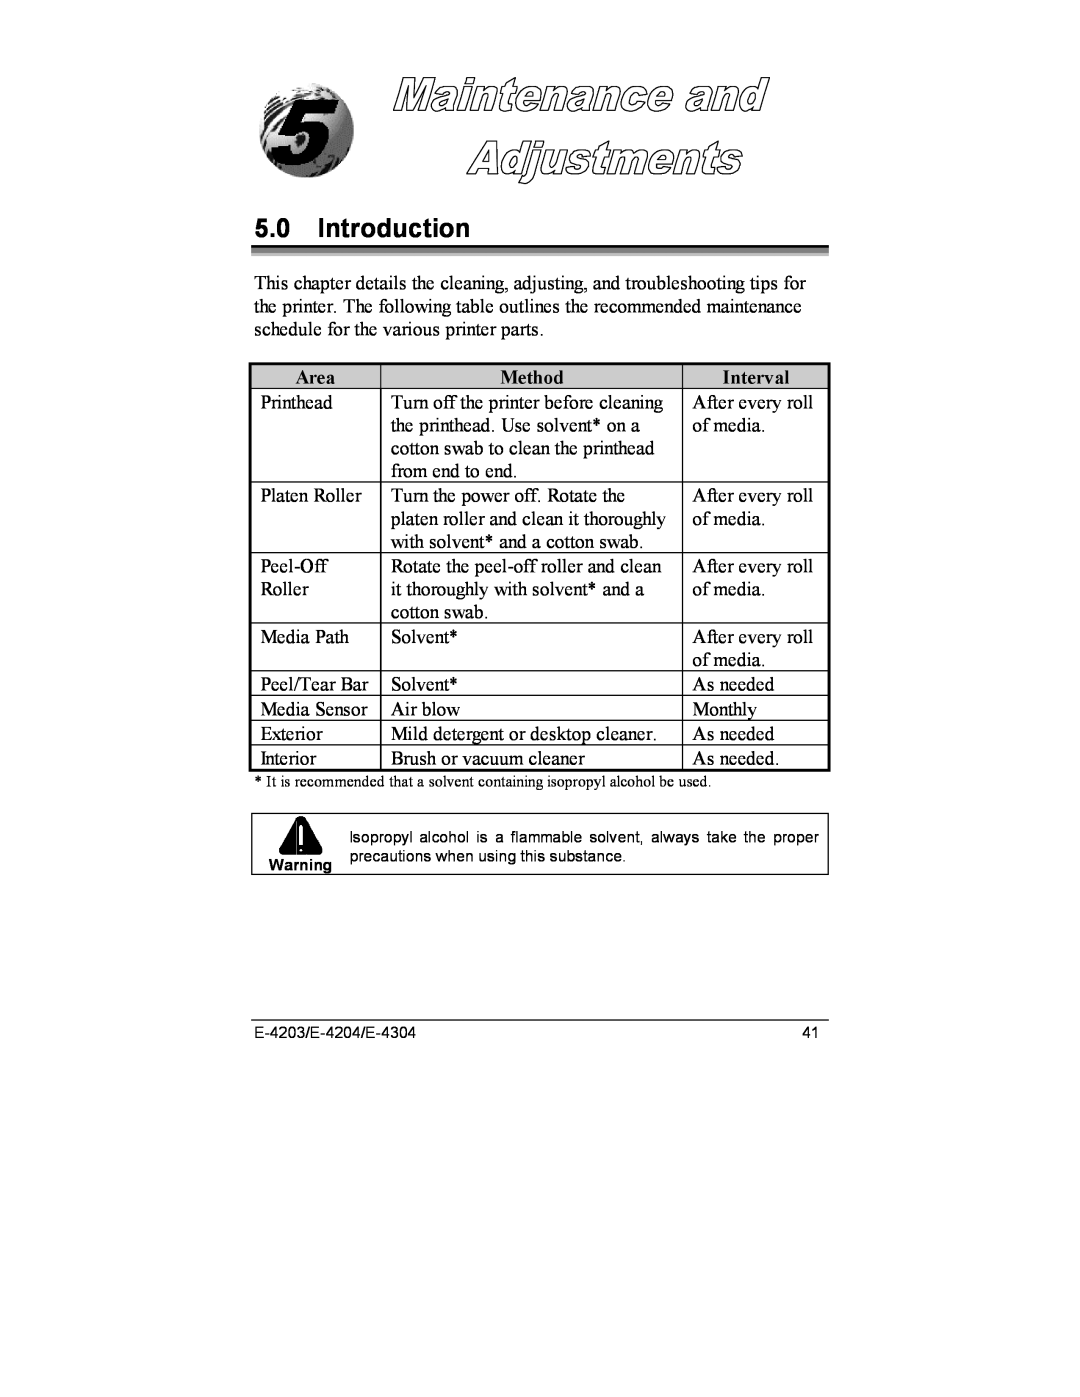 Datamax E-4203, E-4204, E-4304e manual Introduction, Area, Method, Interval 